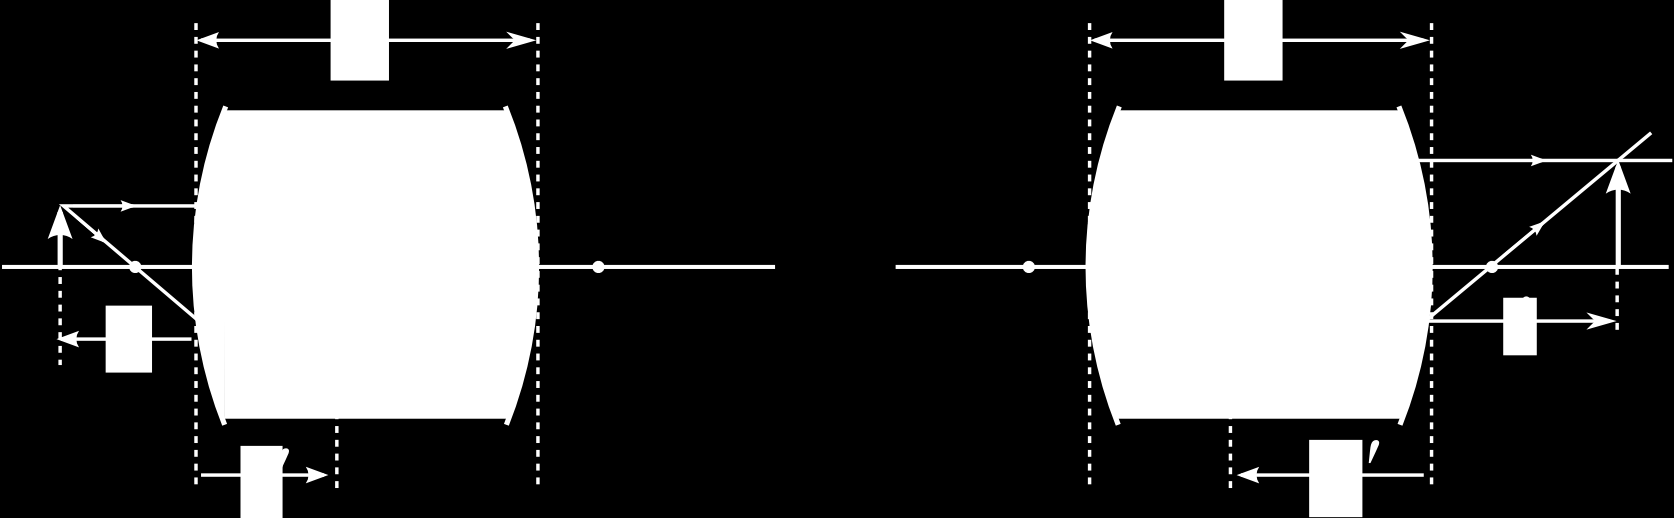 Figura 20: Perfis possíveis para lentes convergentes (em cima) e divergentes(em baixo).